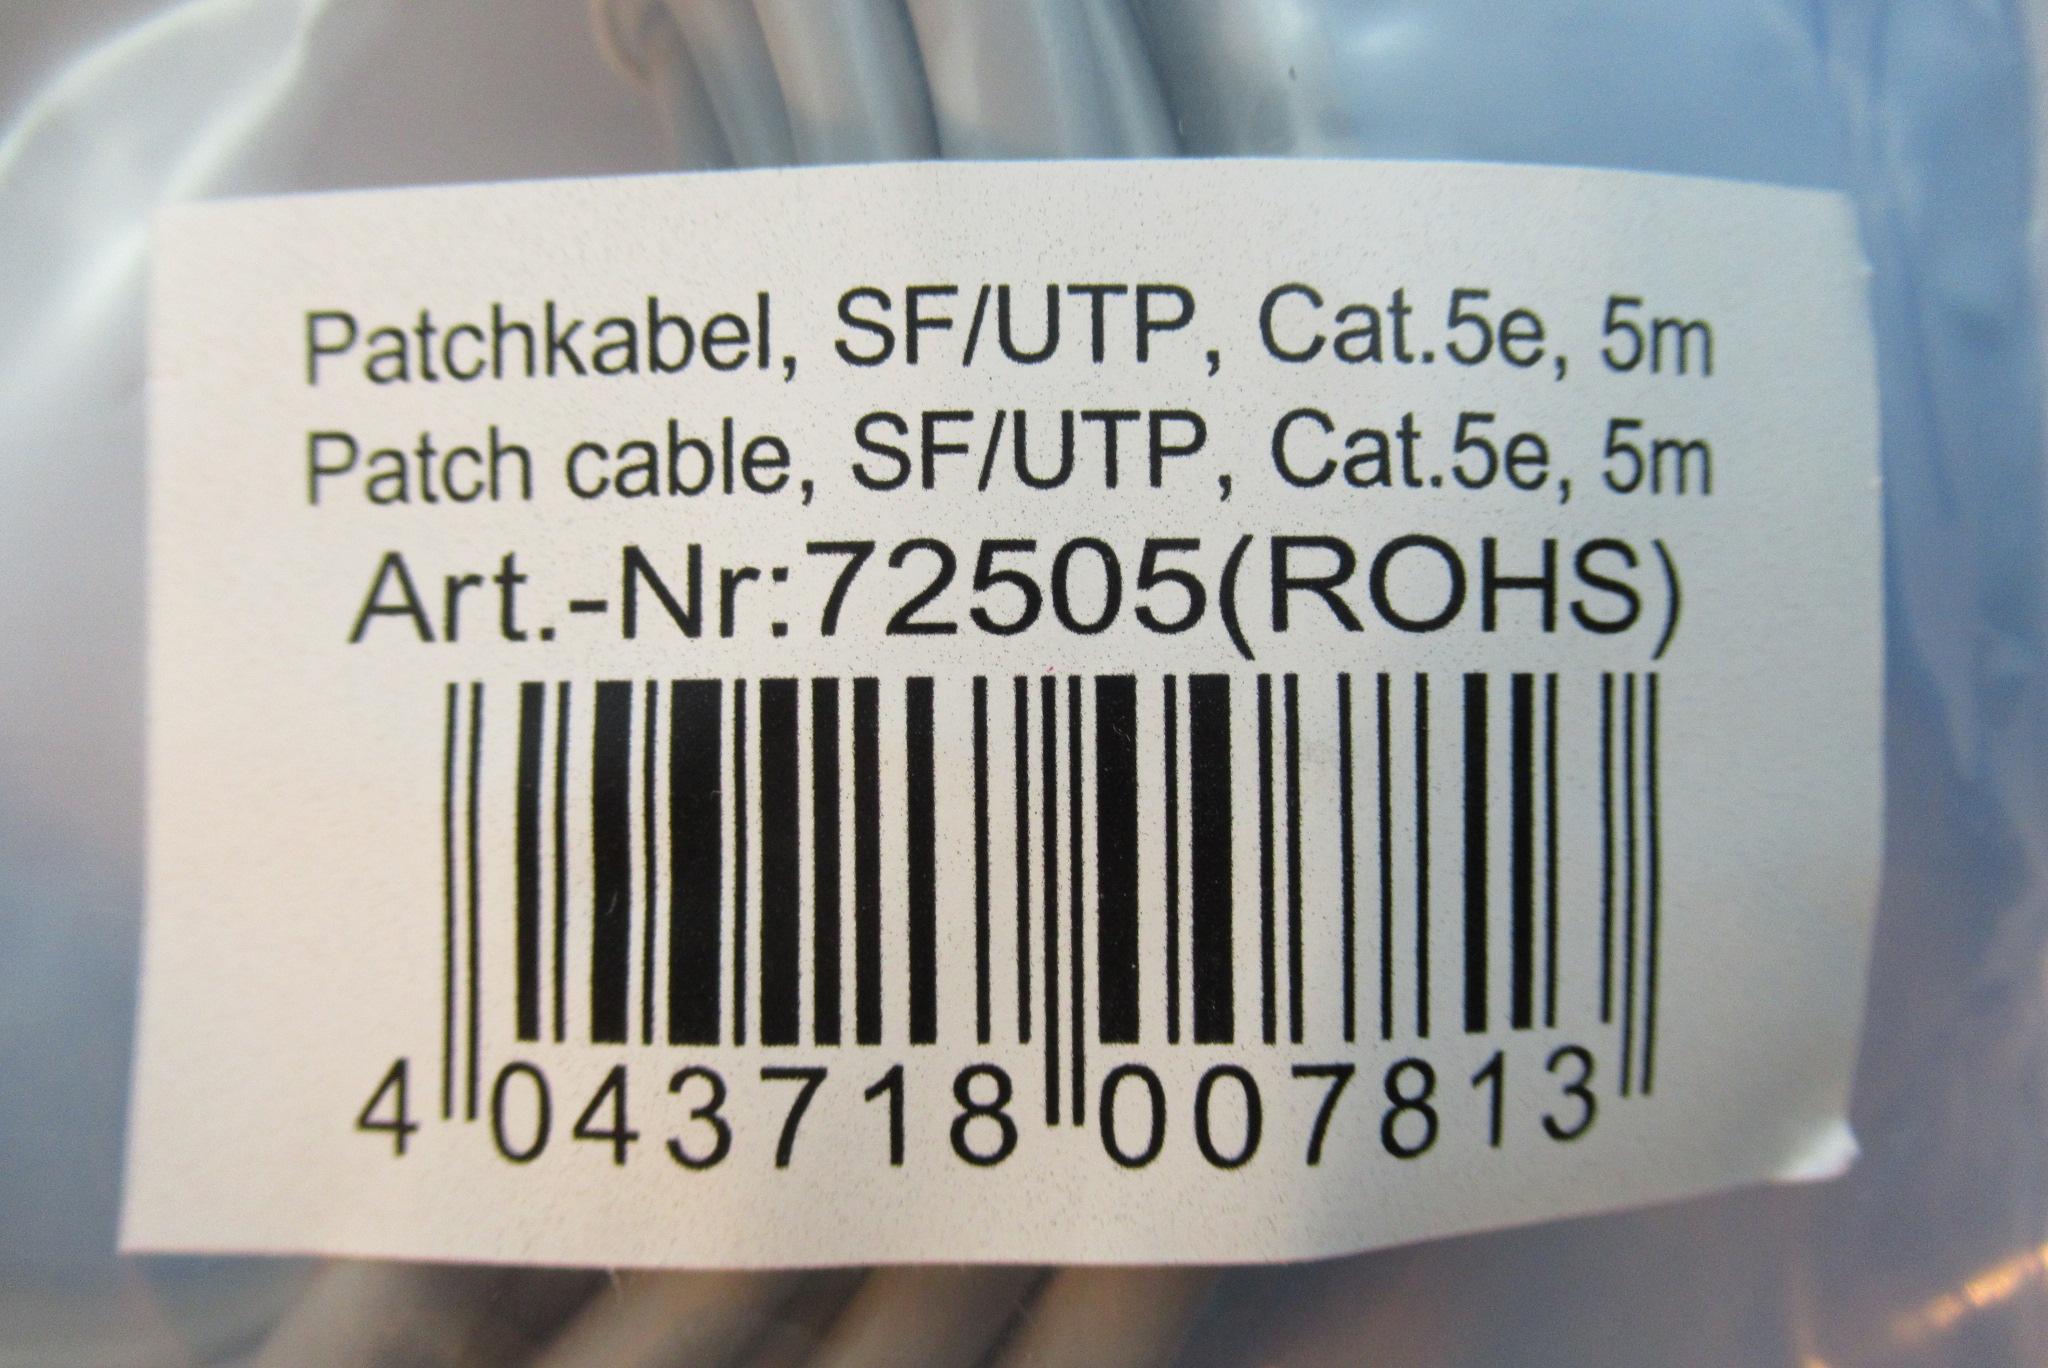 TP Patchkabel Kat.5e FTP 5m grau INTOS 72505